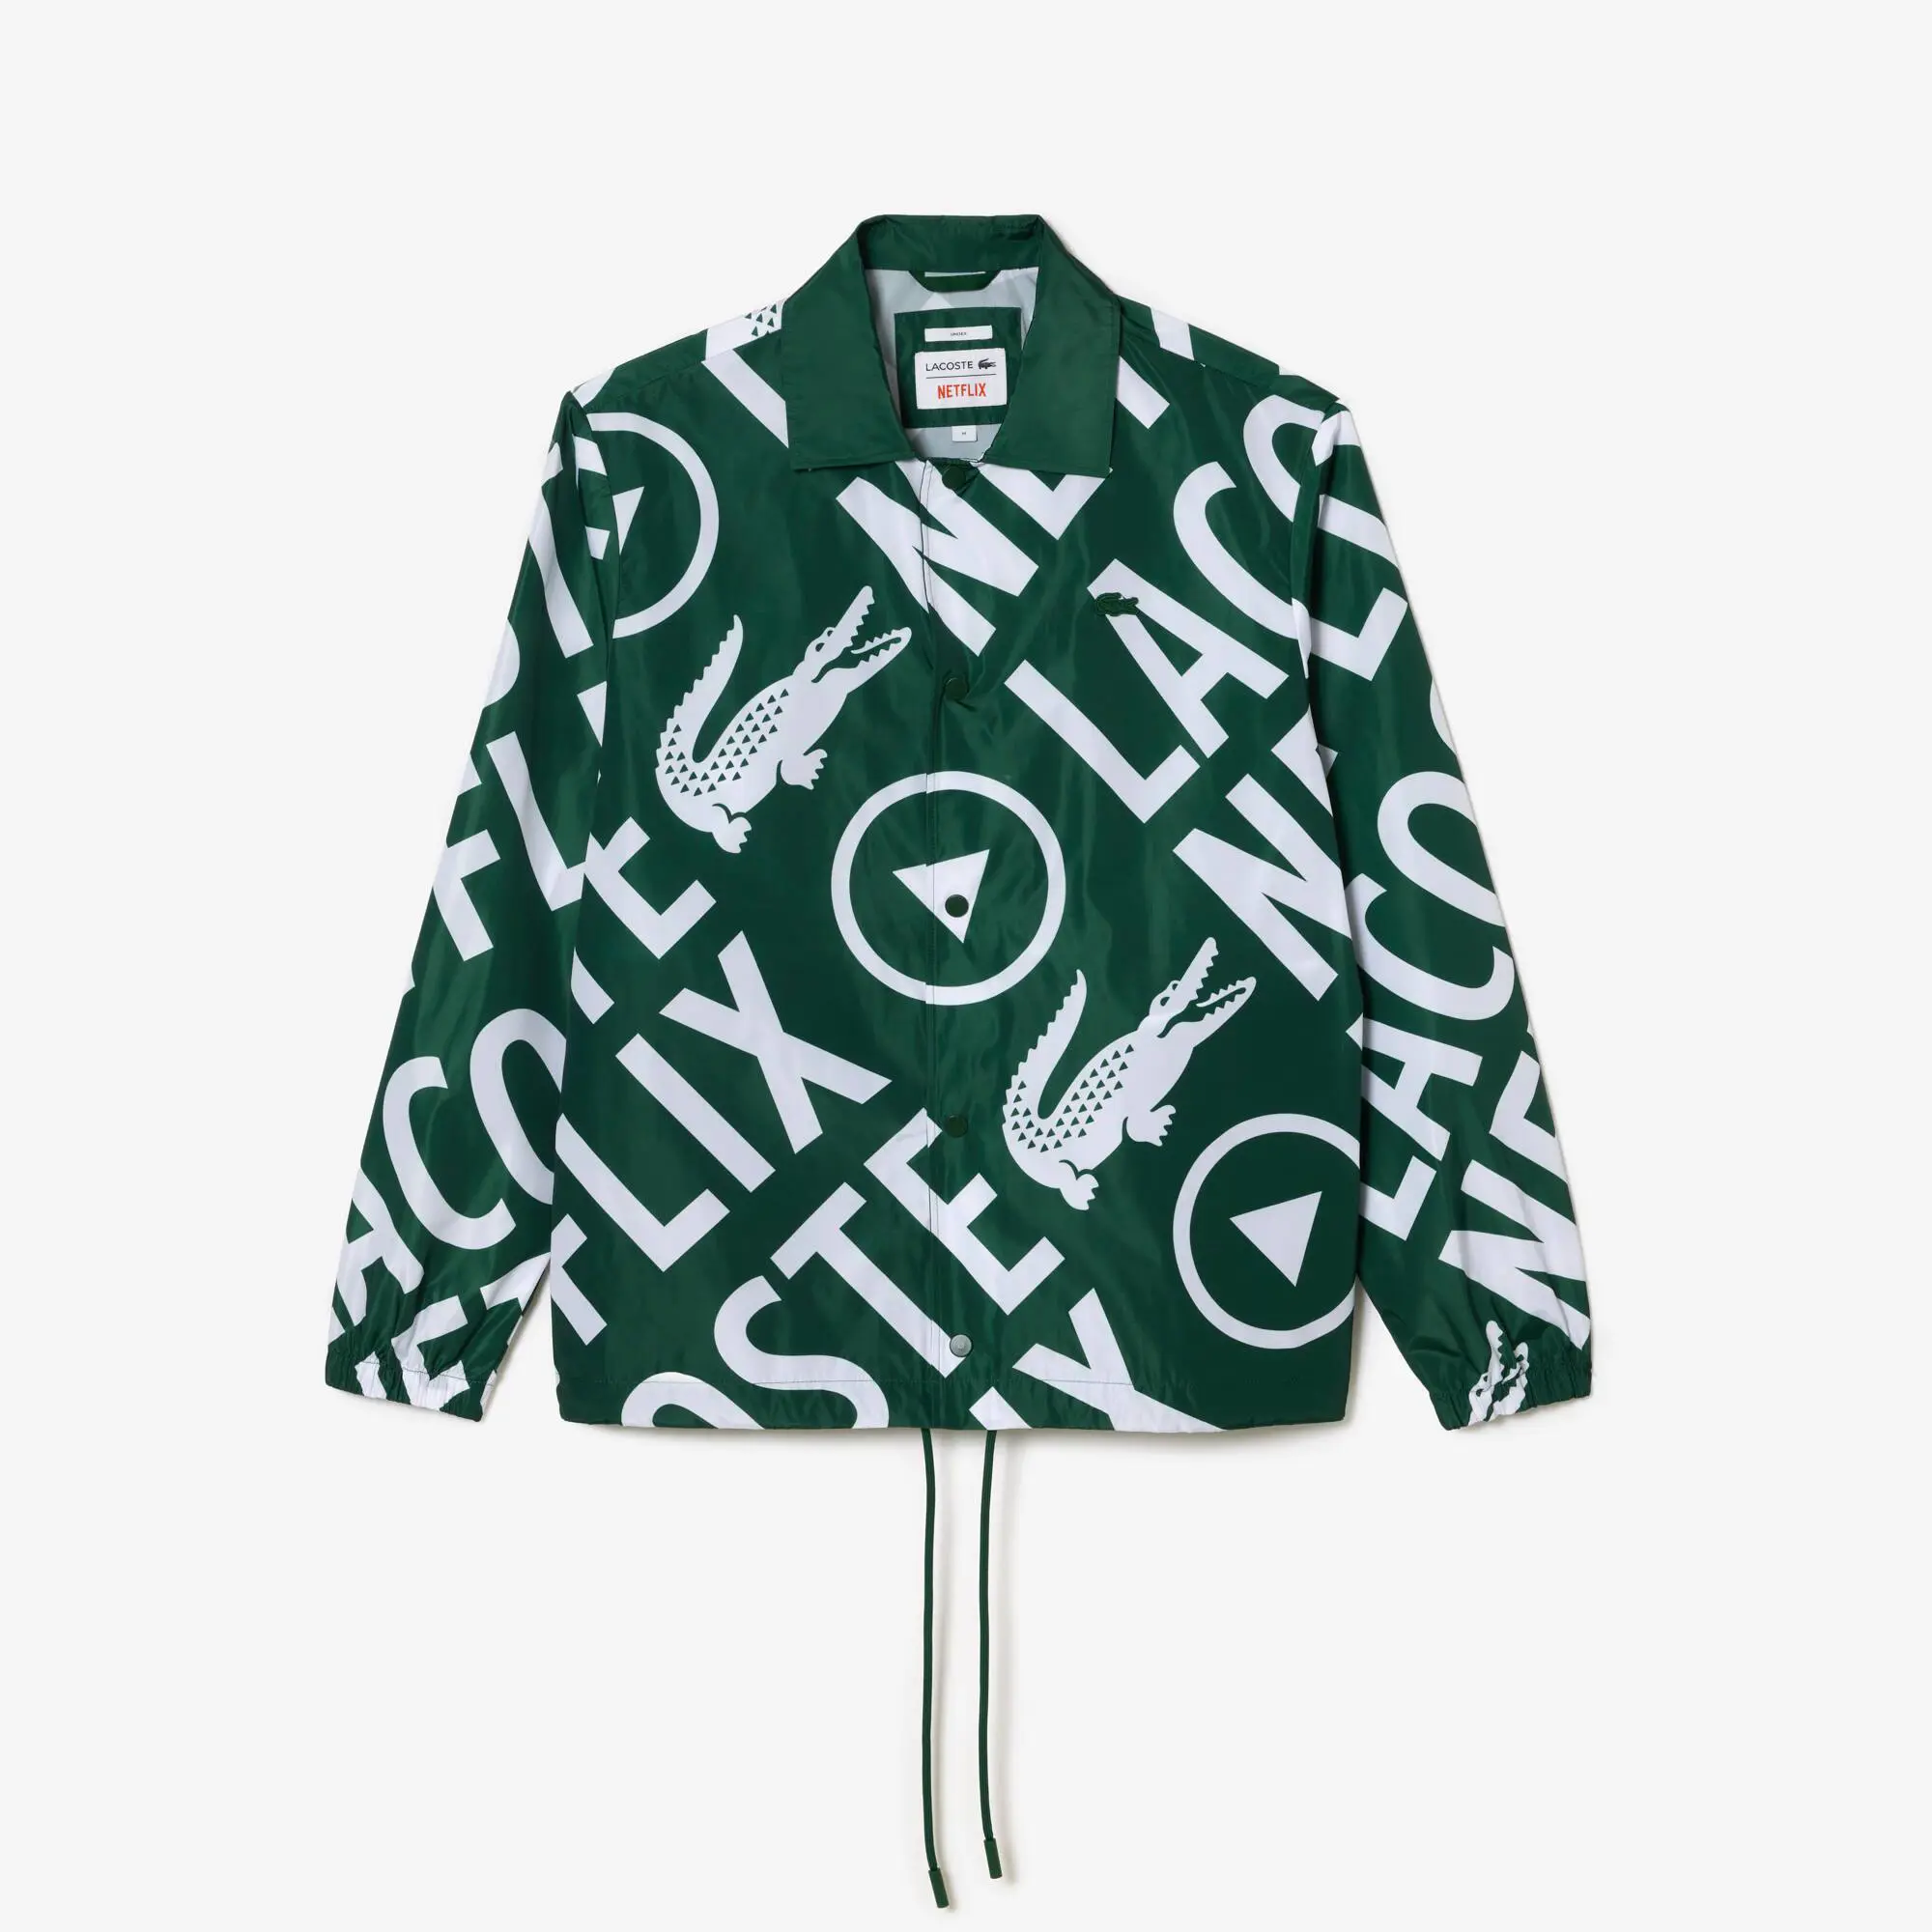 Lacoste Unisex Lacoste x Netflix Printed Polo Jacket. 2